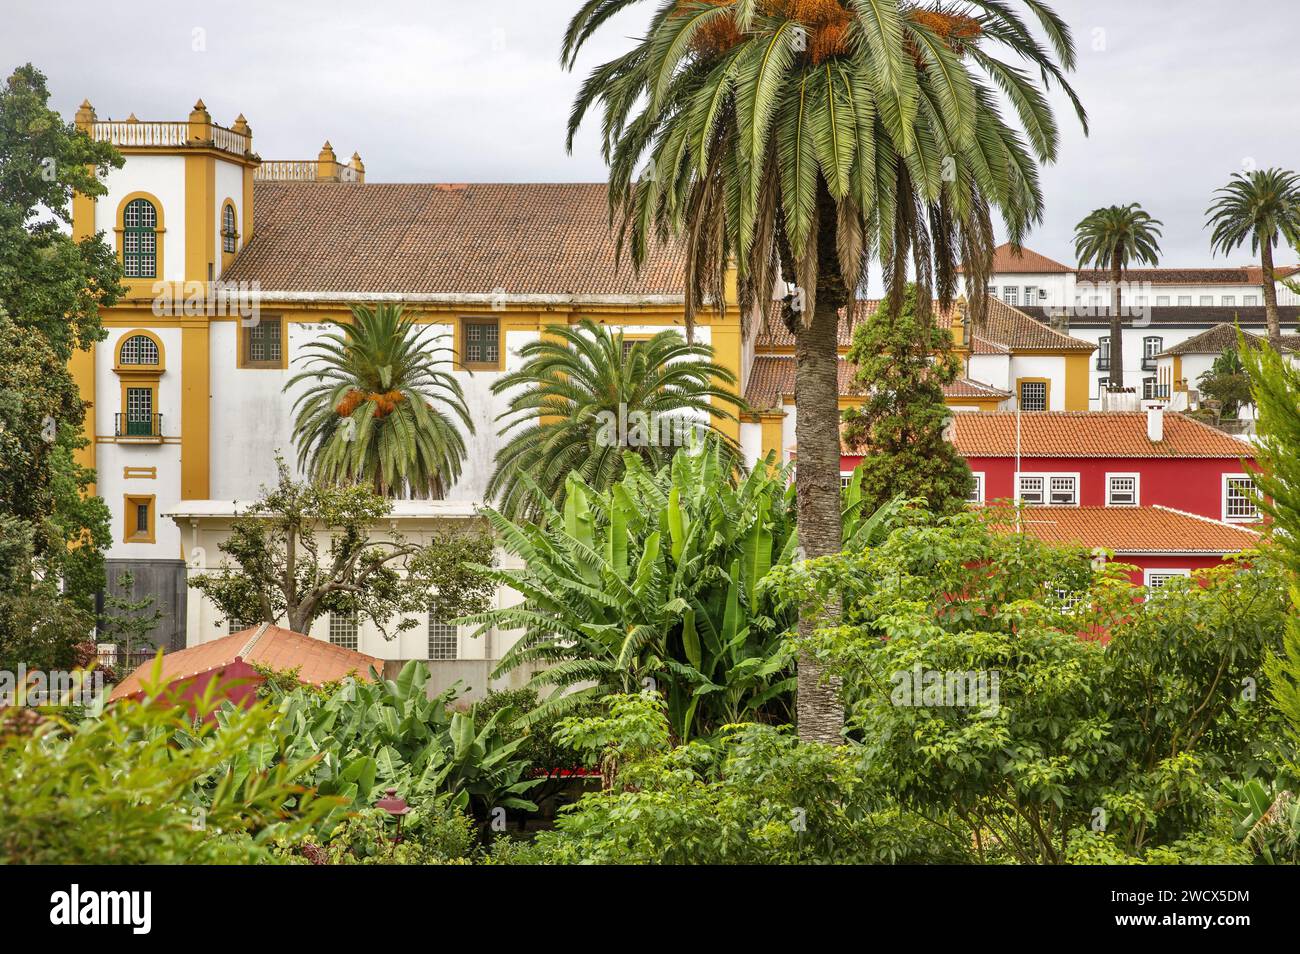 Portugal, archipel des Açores, île de Terceira, Angra do Heroismo, façades colorées de bâtiments coloniaux avec des toits de tuiles dans le centre historique Banque D'Images